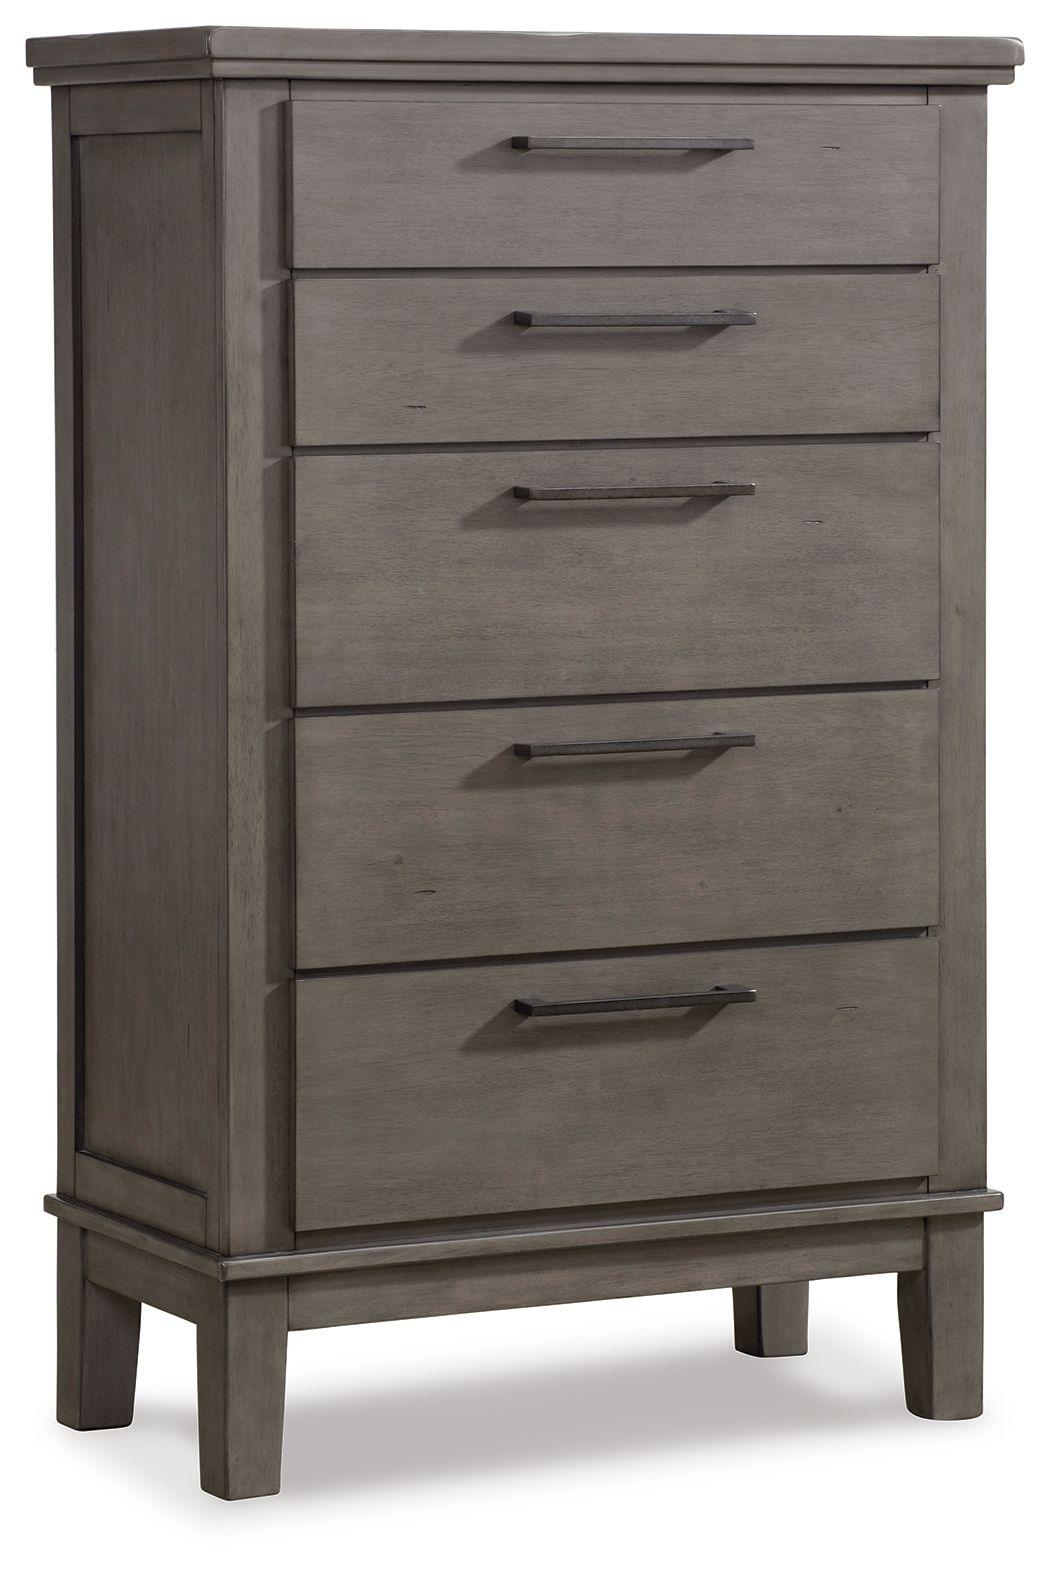 Benchcraft® - Hallanden - Gray - Five Drawer Chest - 5th Avenue Furniture